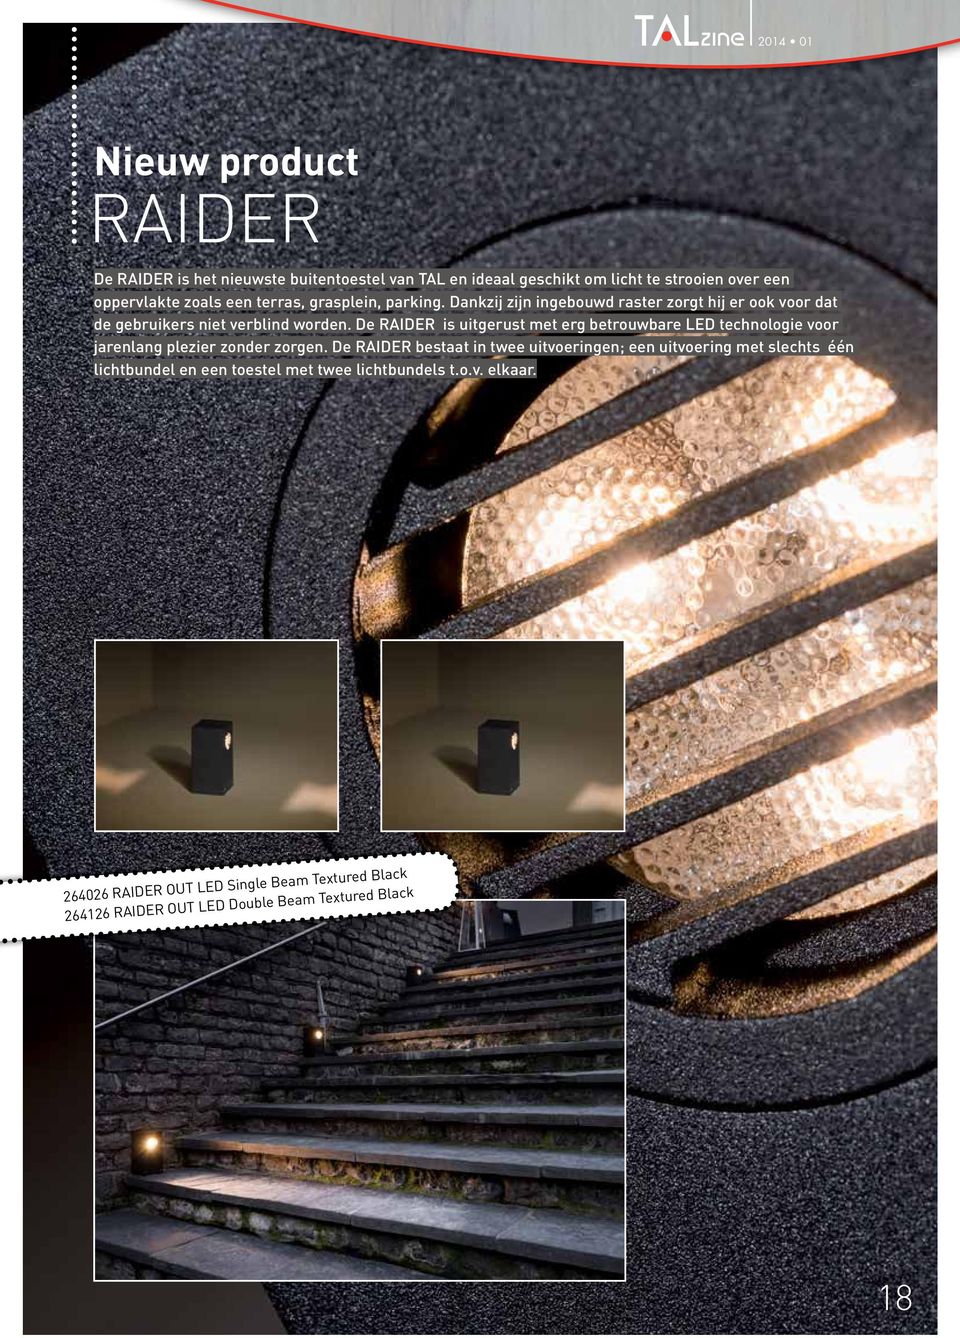 De RAIDER is uitgerust met erg betrouwbare LED technologie voor jarenlang plezier zonder zorgen.